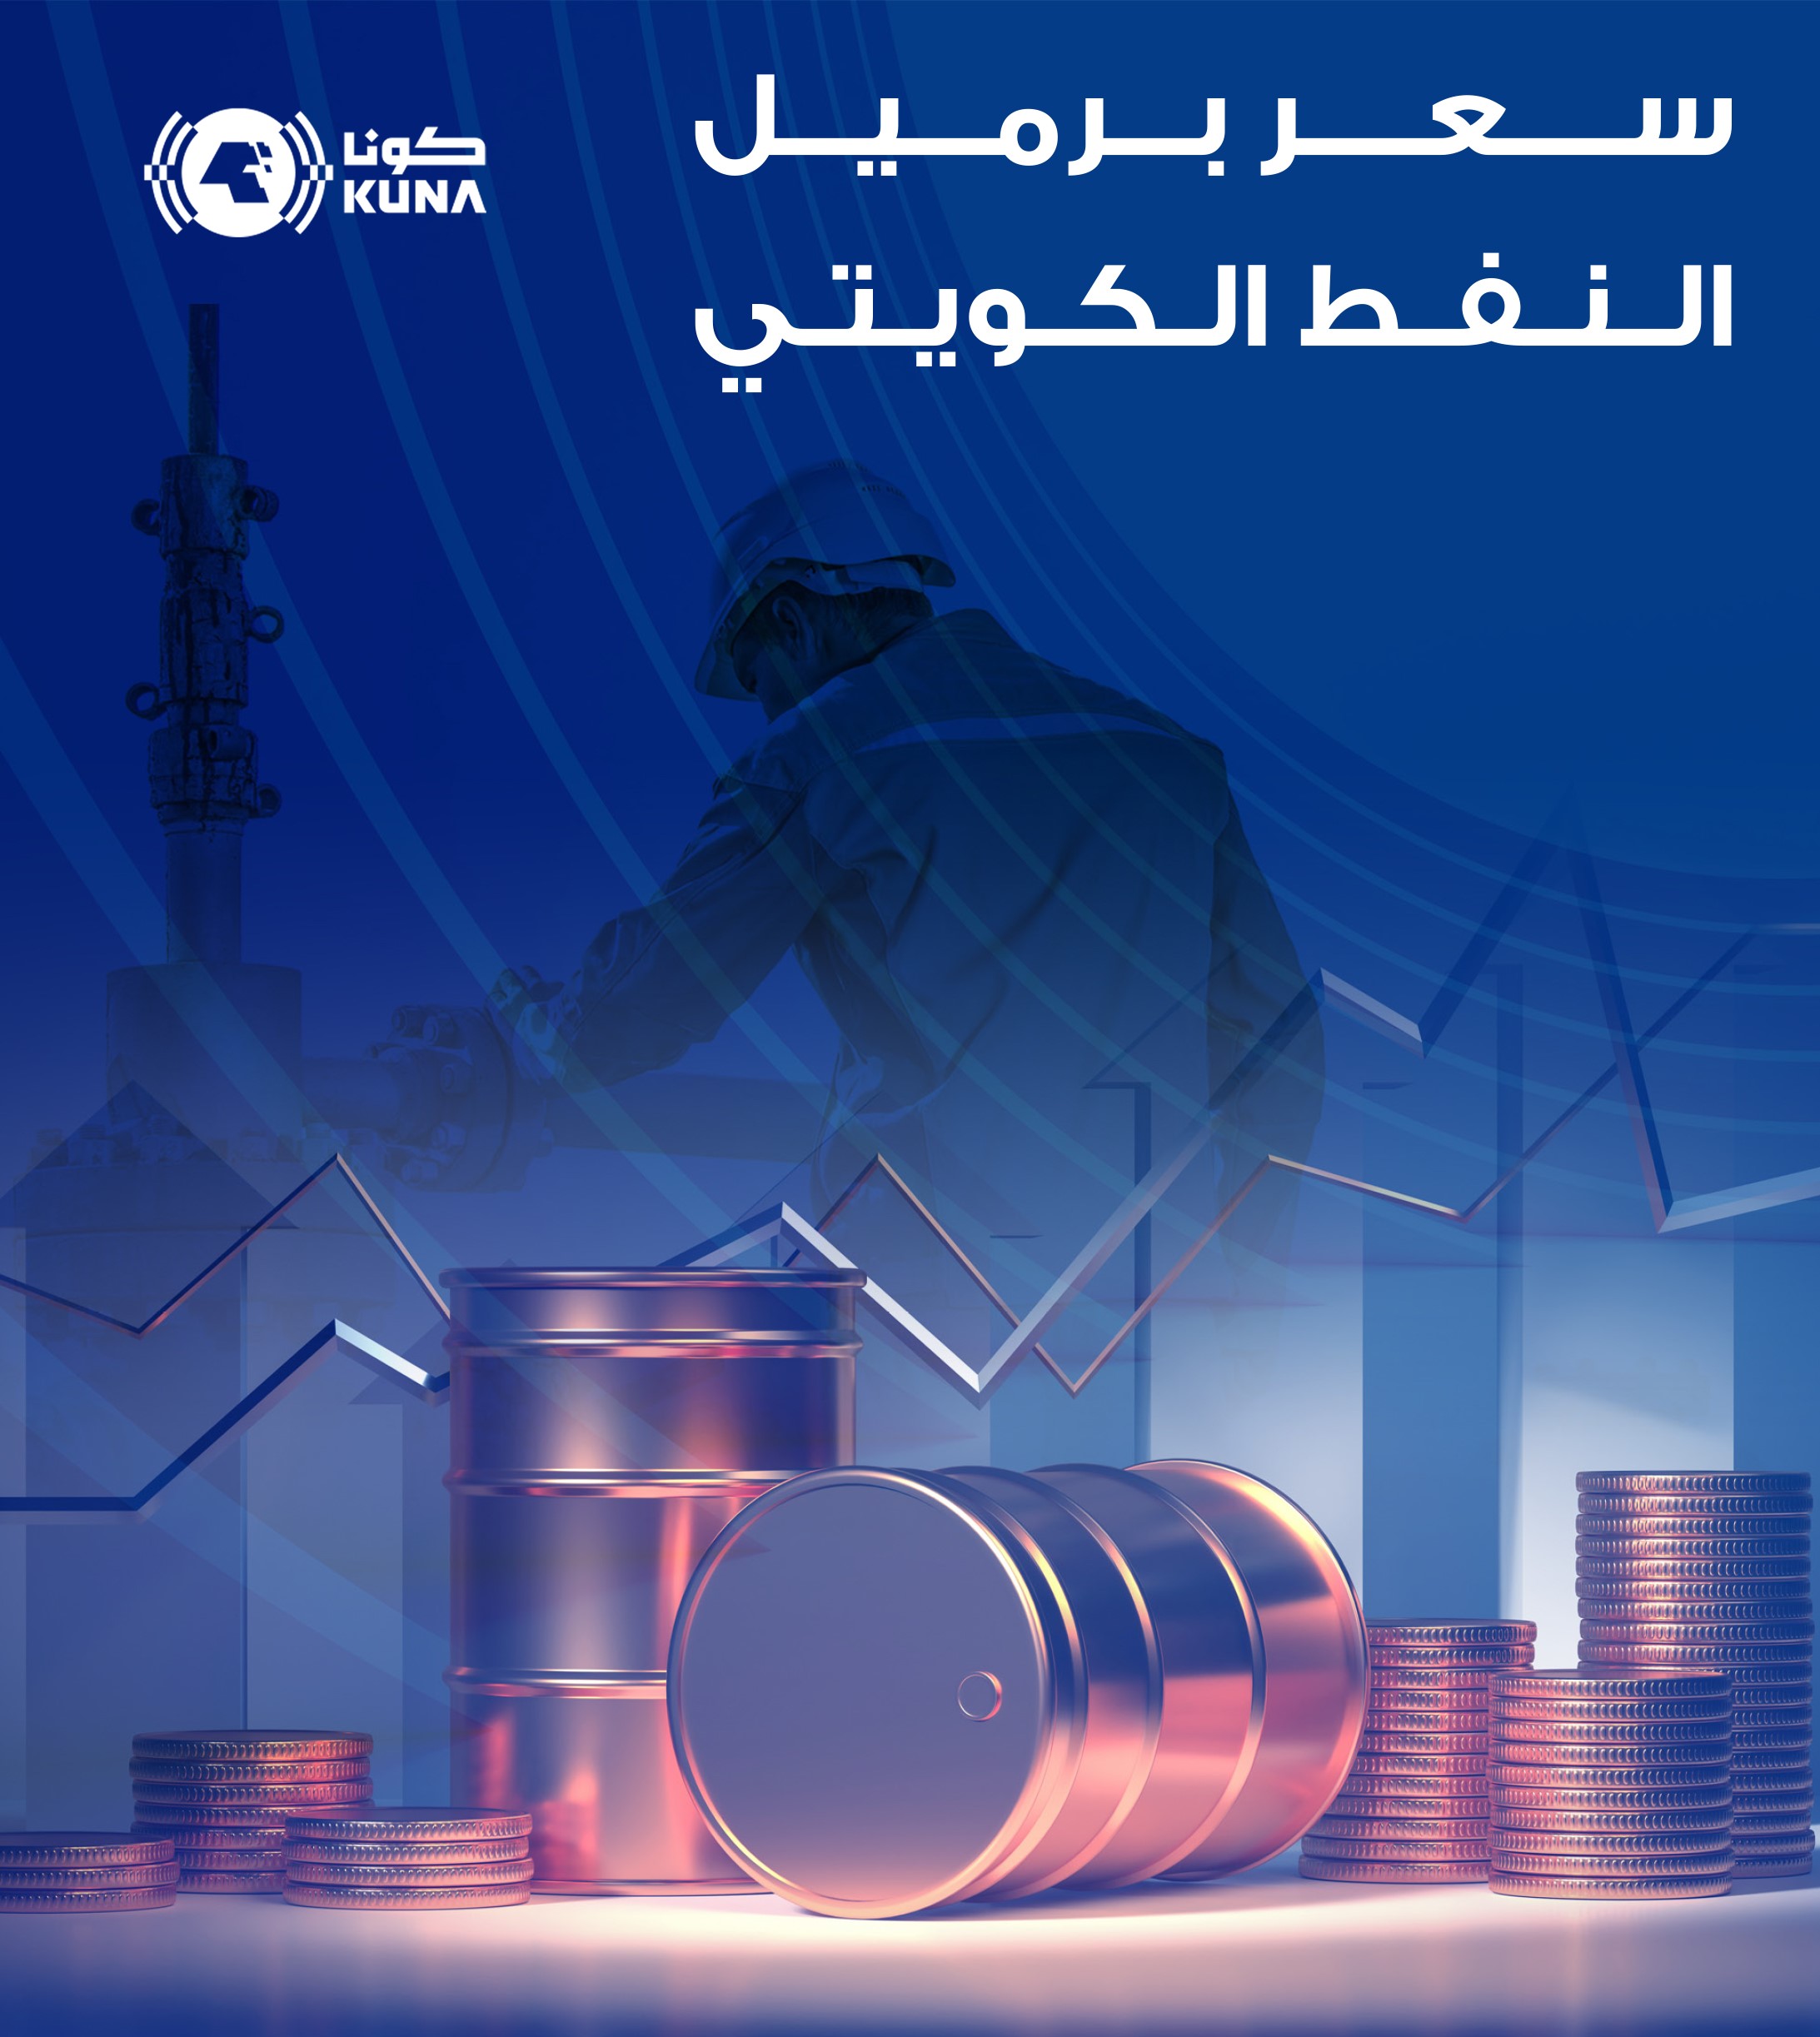 سعر برميل النفط الكويتي ينخفض 21ر1 دولار ليبلغ 17ر87 دولار                                                                                                                                                                                                